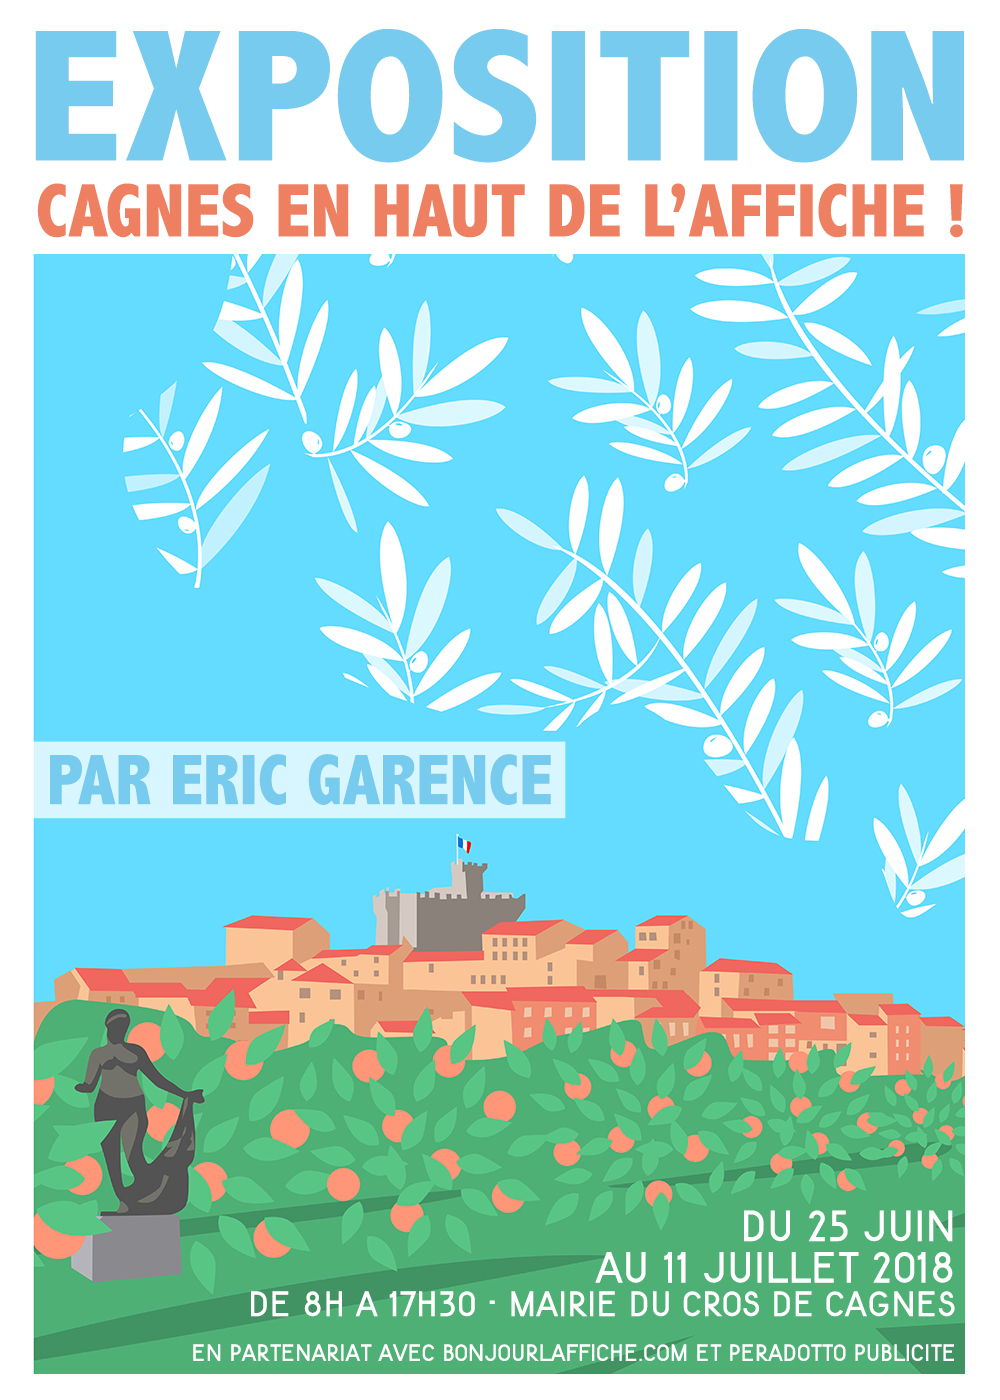 Garence Eric Expo Cagnes Renoir Jardins Oliviers Cote d'azur Poster Dessin minimaliste Nice Saint Tropez